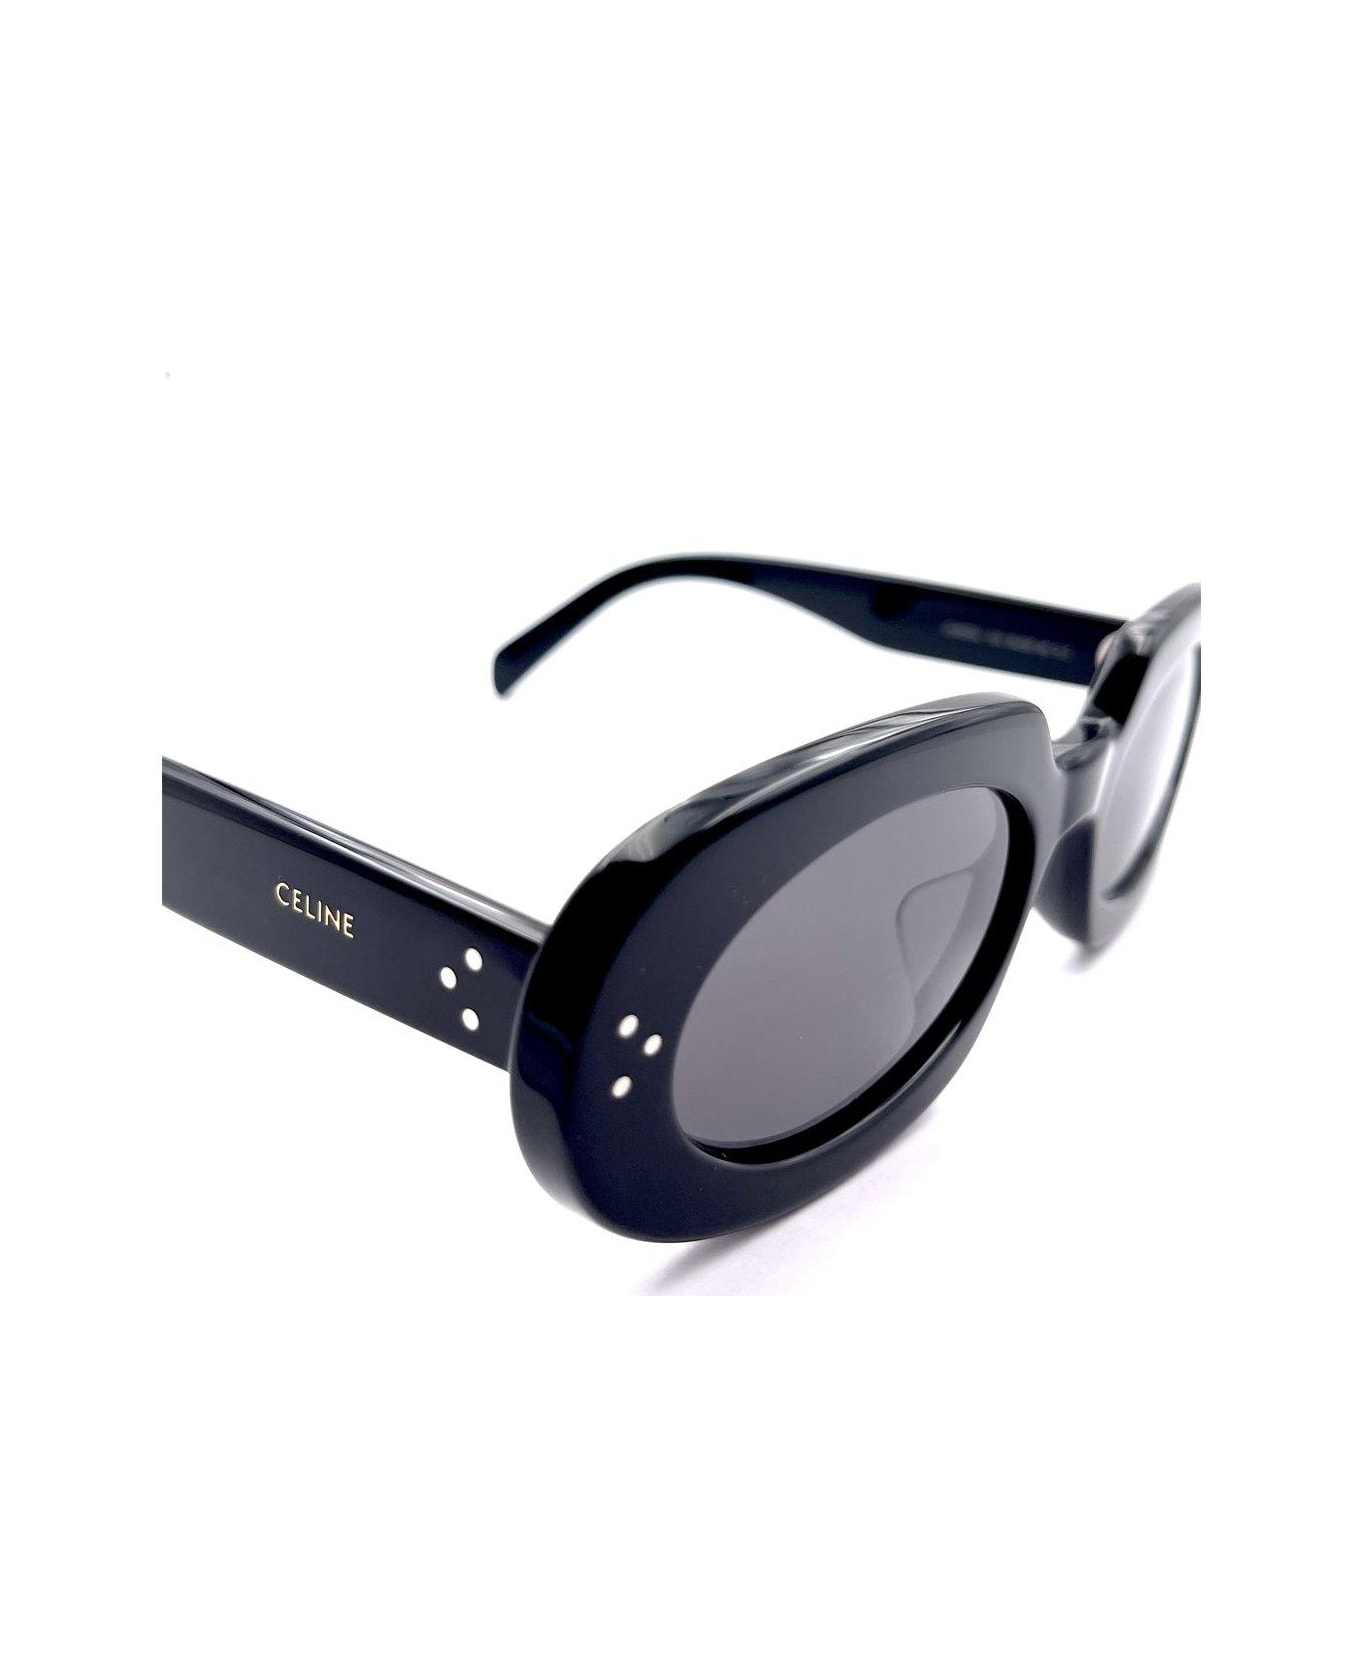 Celine Oval Frame Sunglasses - Nero/Grigio